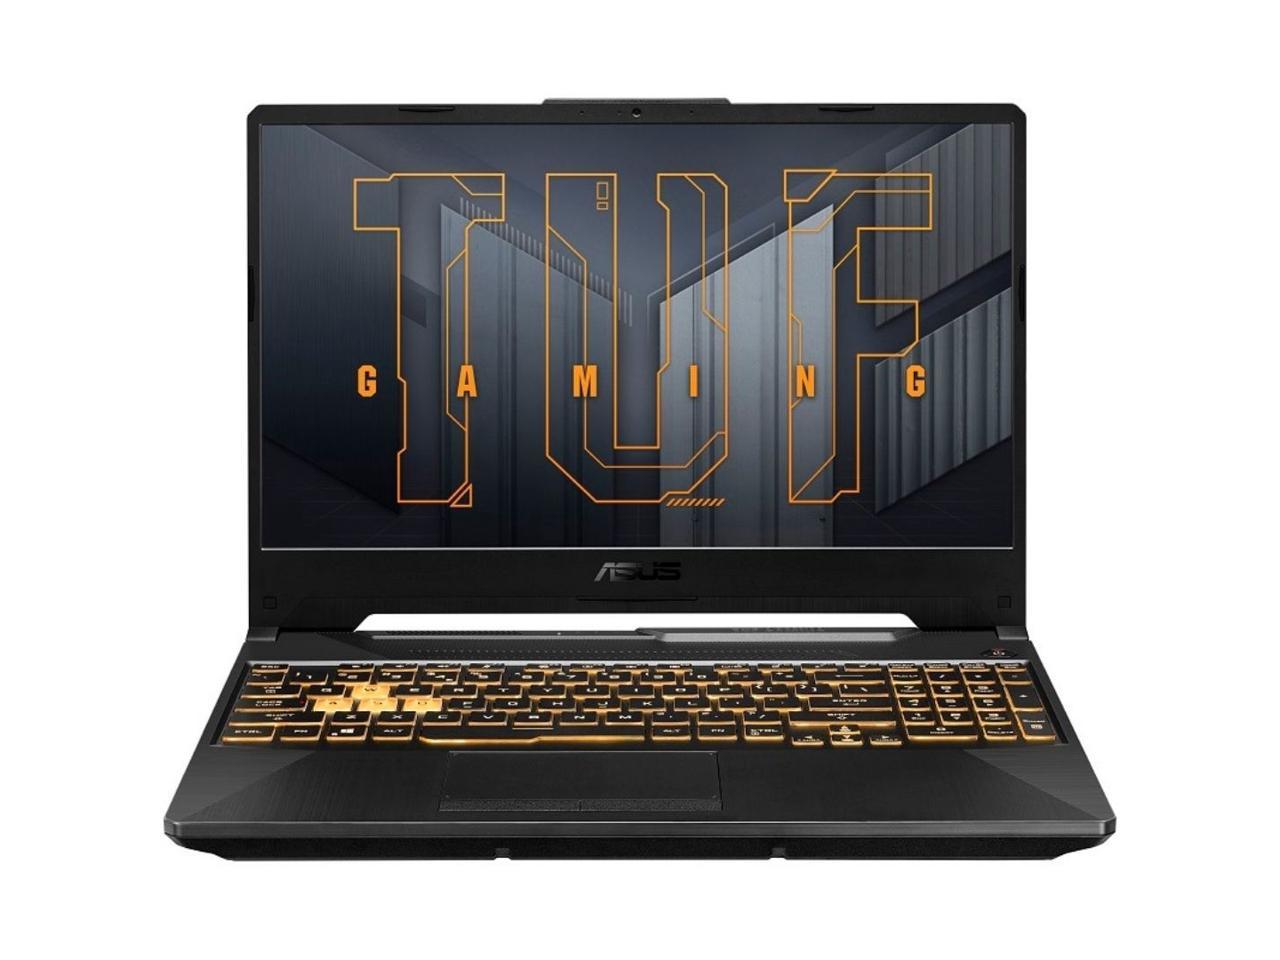 ASUS TUF Gaming F15 Laptop (Intel i7-11800H, 16GB RAM, 2x1TB PCIe SSD RAID 0  (2TB), Win 10 Home)